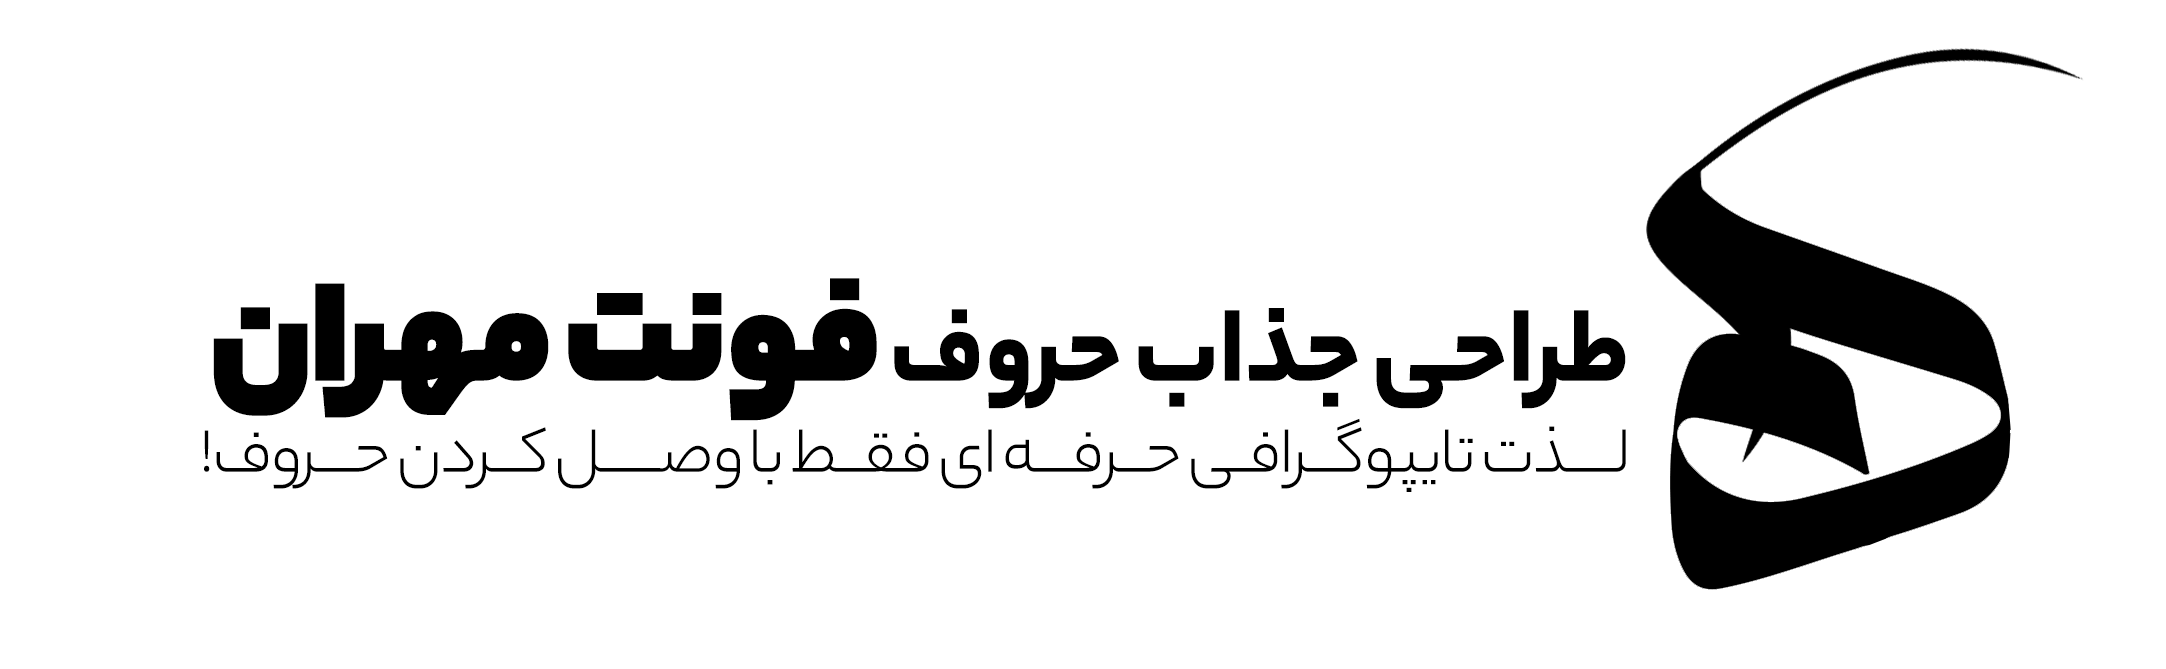 دانلود فونت تایپوگرافی مهران